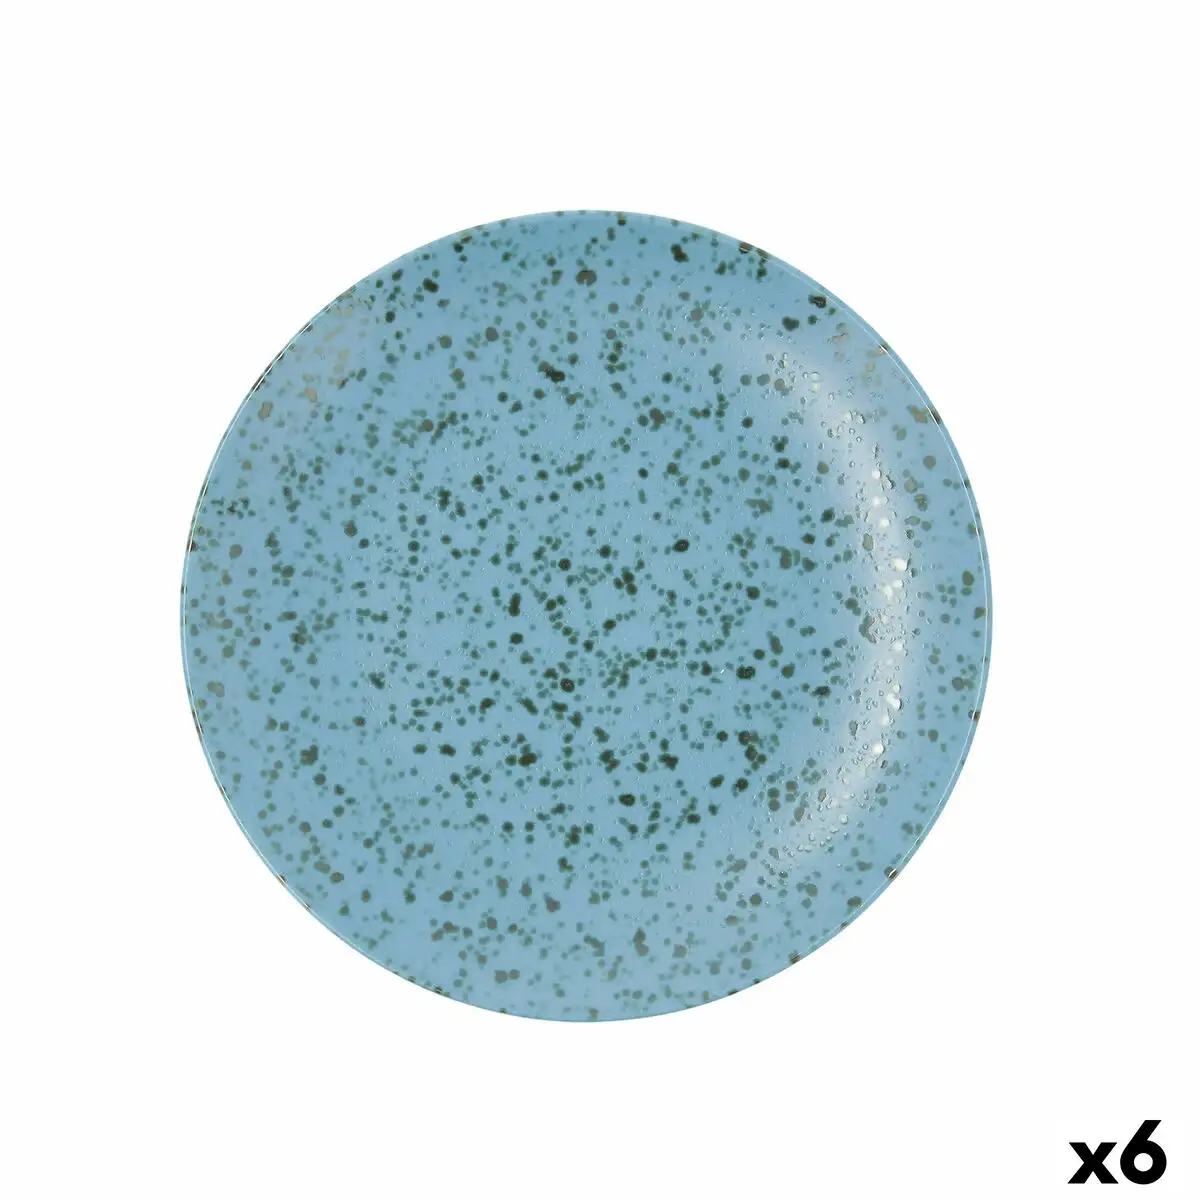 Assiette plate ariane oxide ceramique bleu o 27 cm 6 unites _4142. Bienvenue sur DIAYTAR SENEGAL - Où Chaque Produit a son Histoire. Découvrez notre sélection unique et choisissez des articles qui racontent la richesse culturelle et artistique du Sénégal.